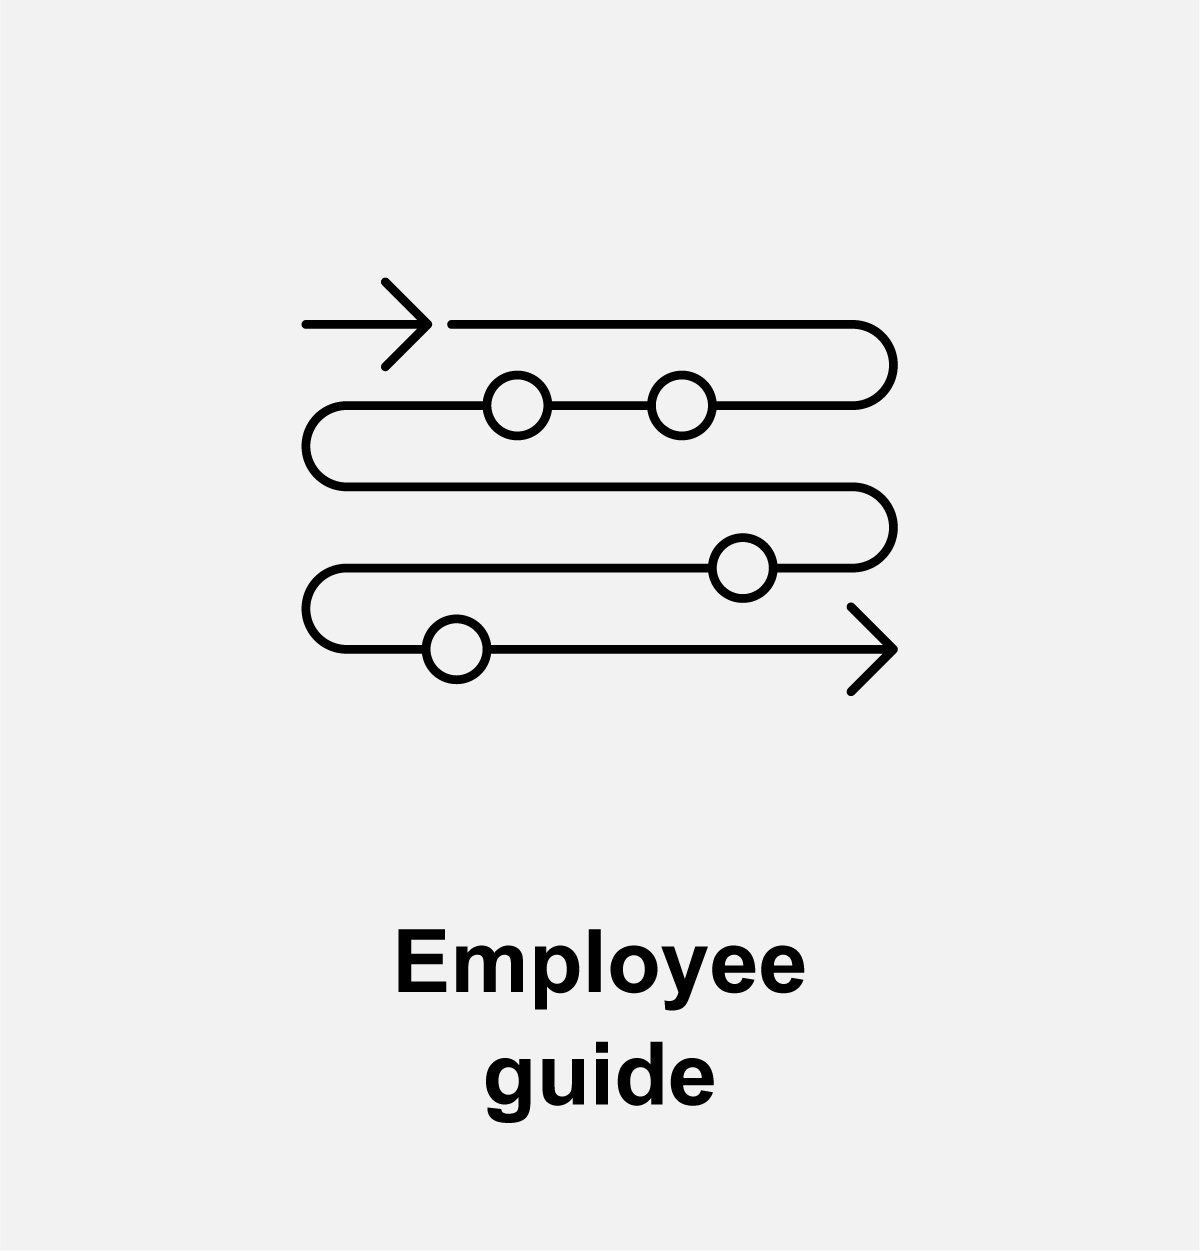 Employee guide